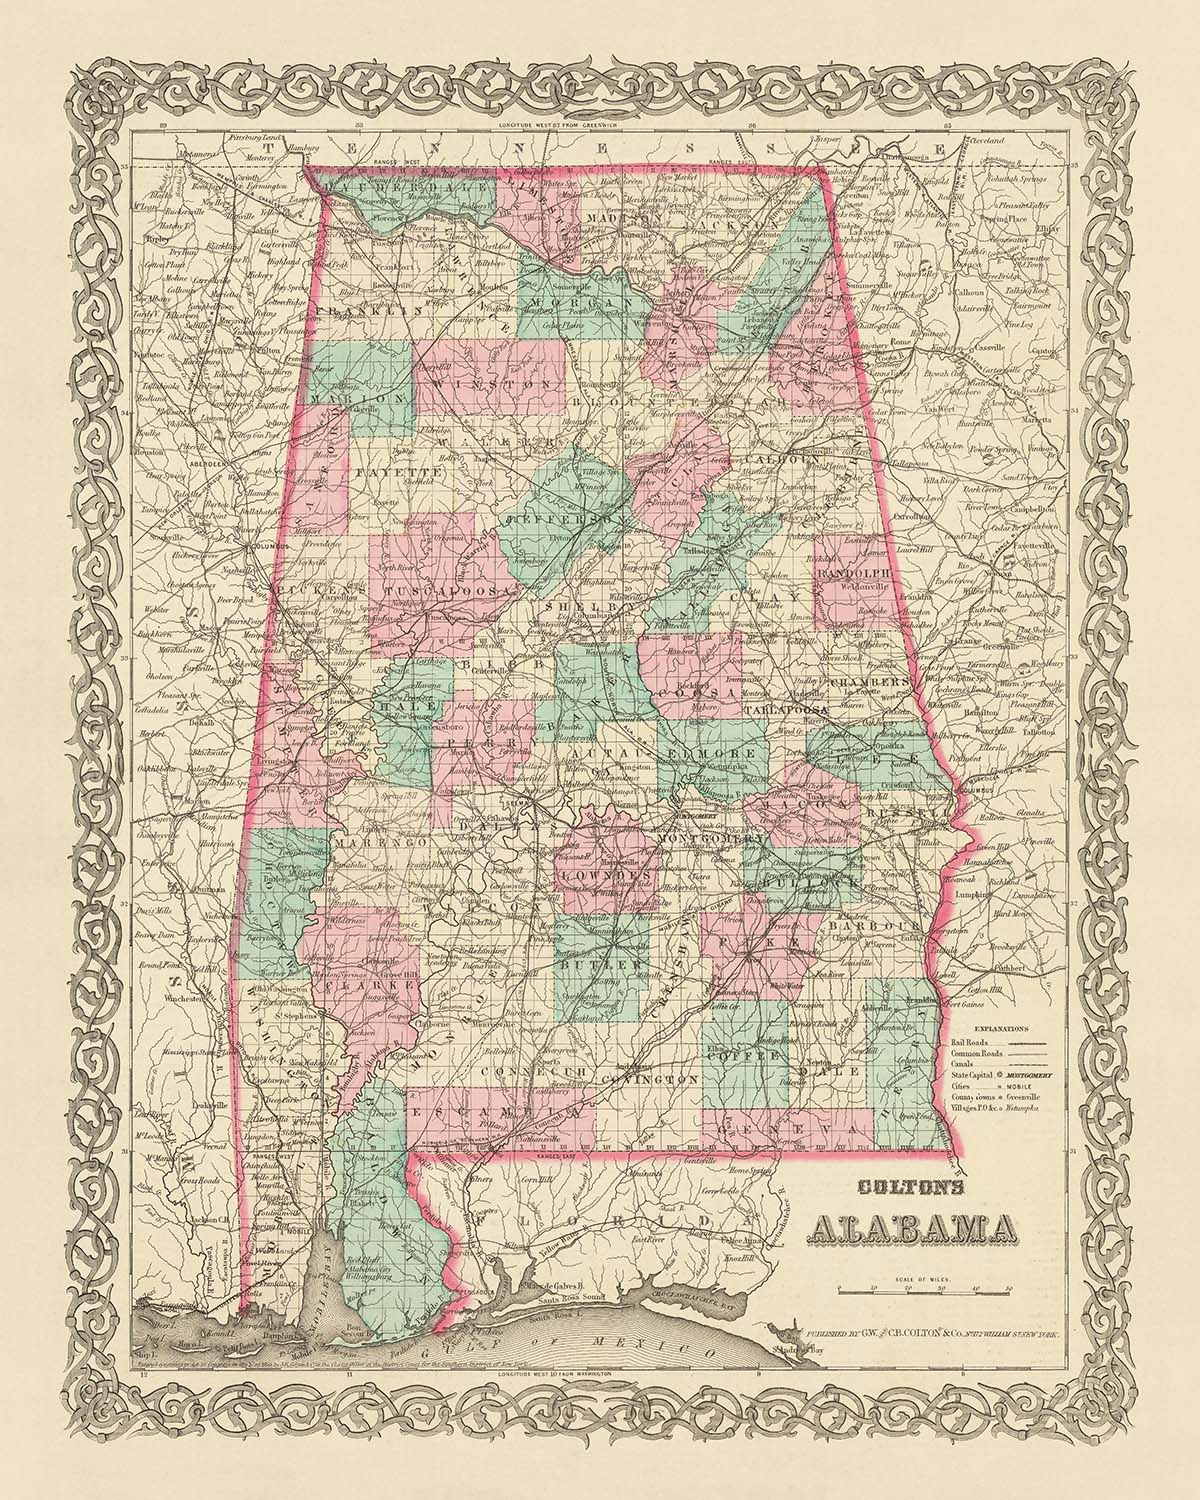 Alte Karte von Alabama, 1855 von JH Colton: Mobile, Montgomery, Huntsville, Tuscaloosa und Selma